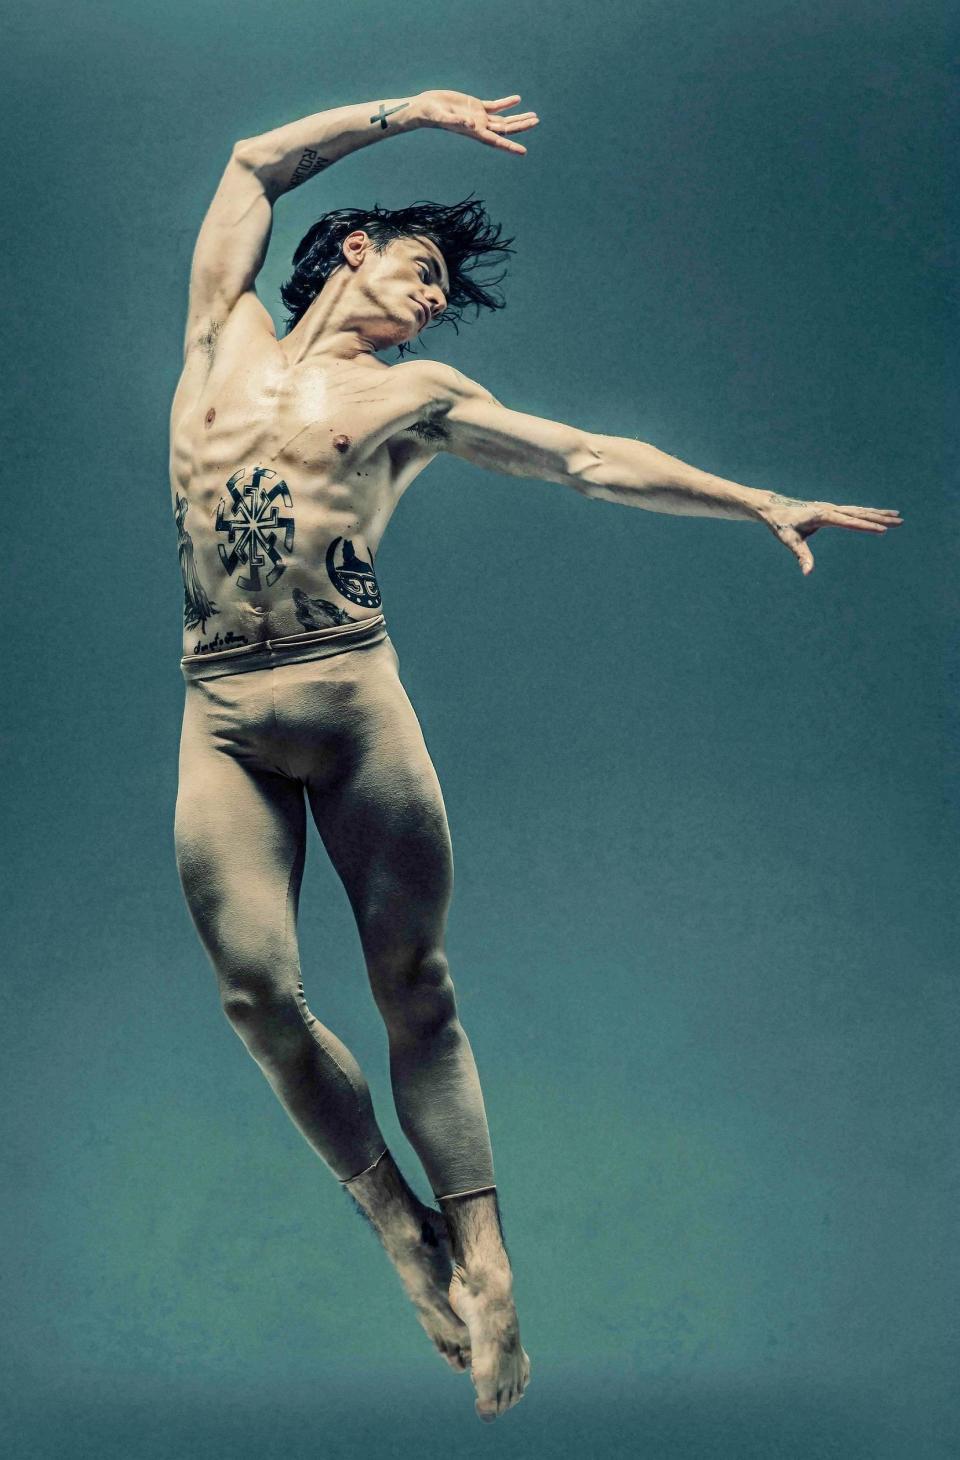 《刺青舞者》由烏克蘭芭雷舞者謝爾蓋波盧寧（Sergei Polunin），現身揭露他身上刺青與親情、家庭之間的秘密。（圖／海鵬提供）